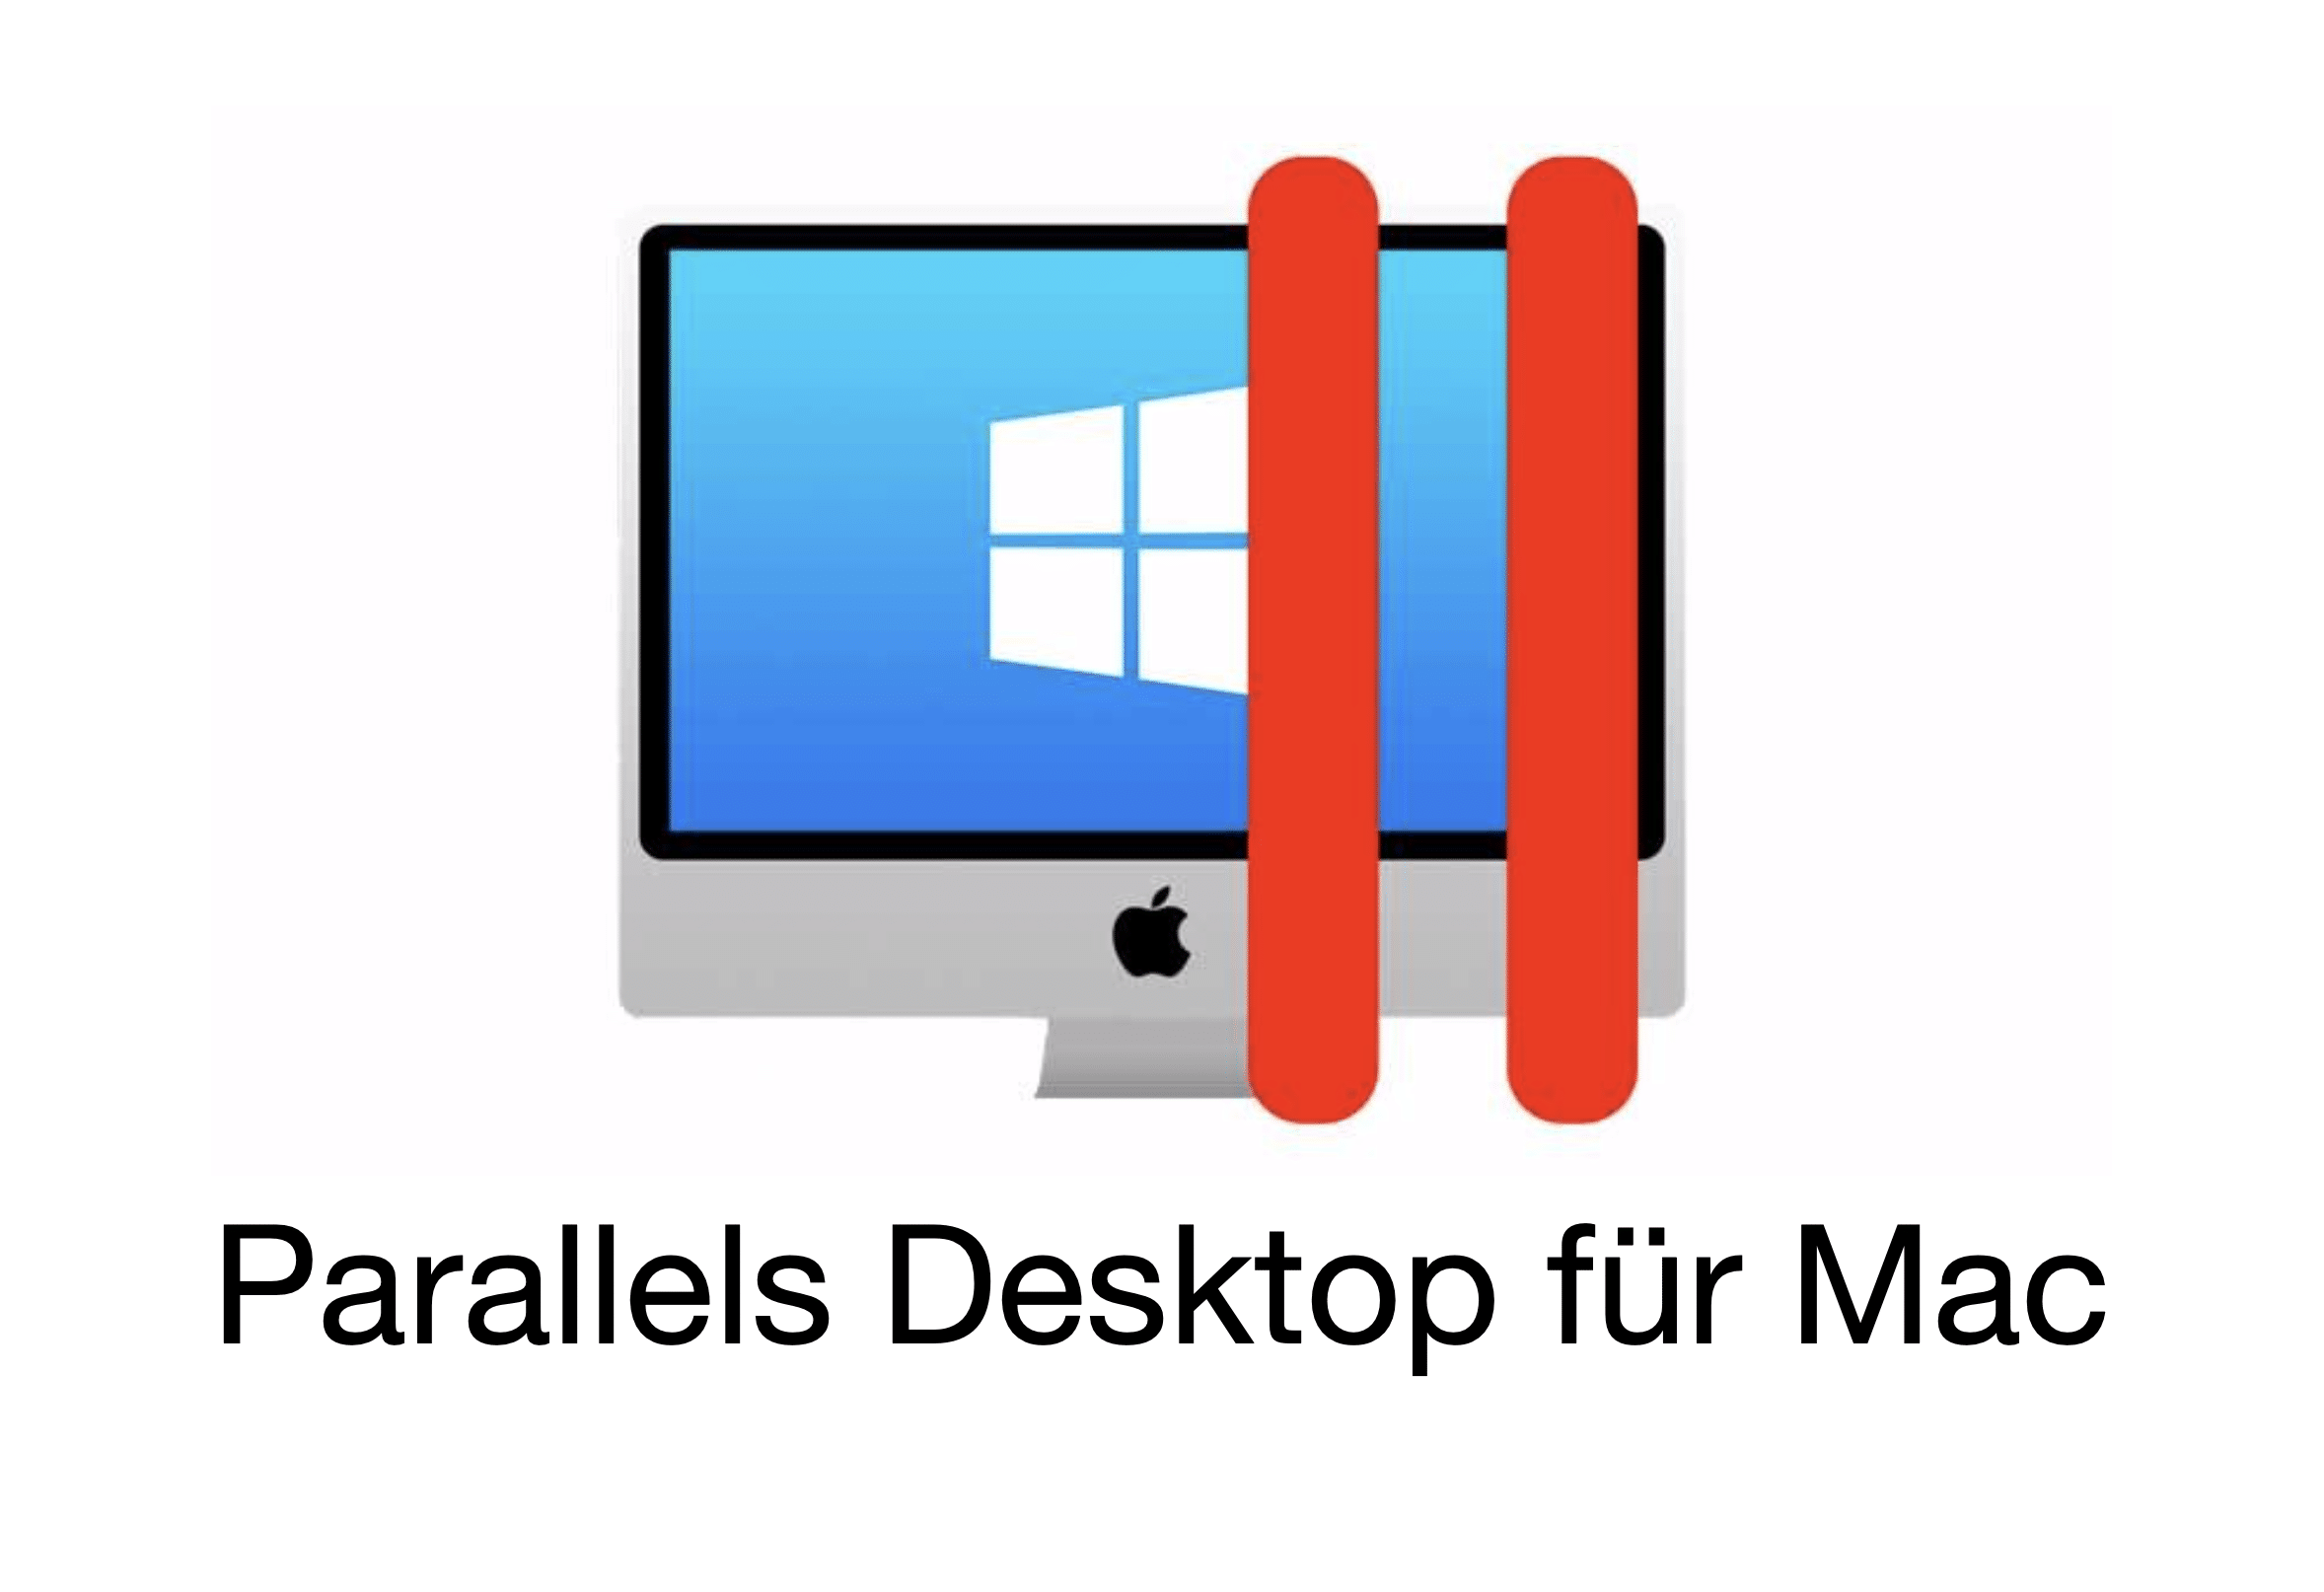 parallels desktop for mac cost